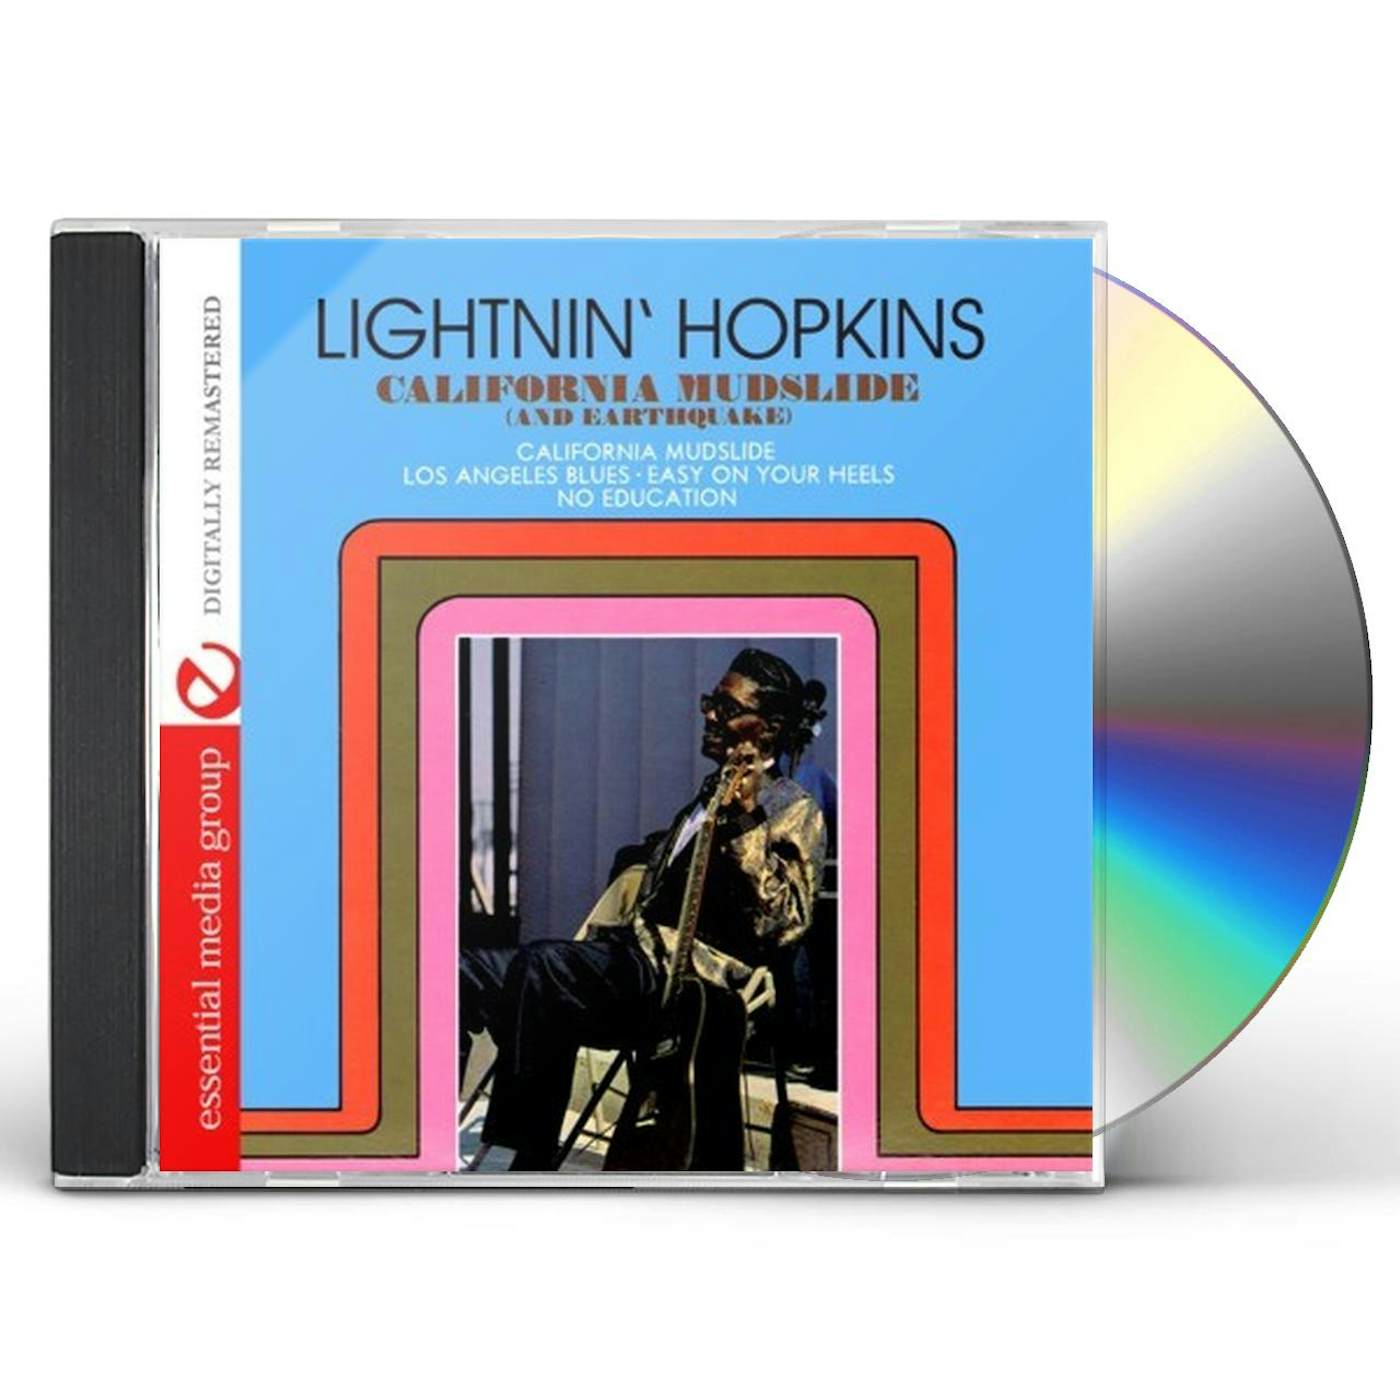 Lightnin' Hopkins CALIFORNIA MUDSLIDE & EARTHQUAKE CD